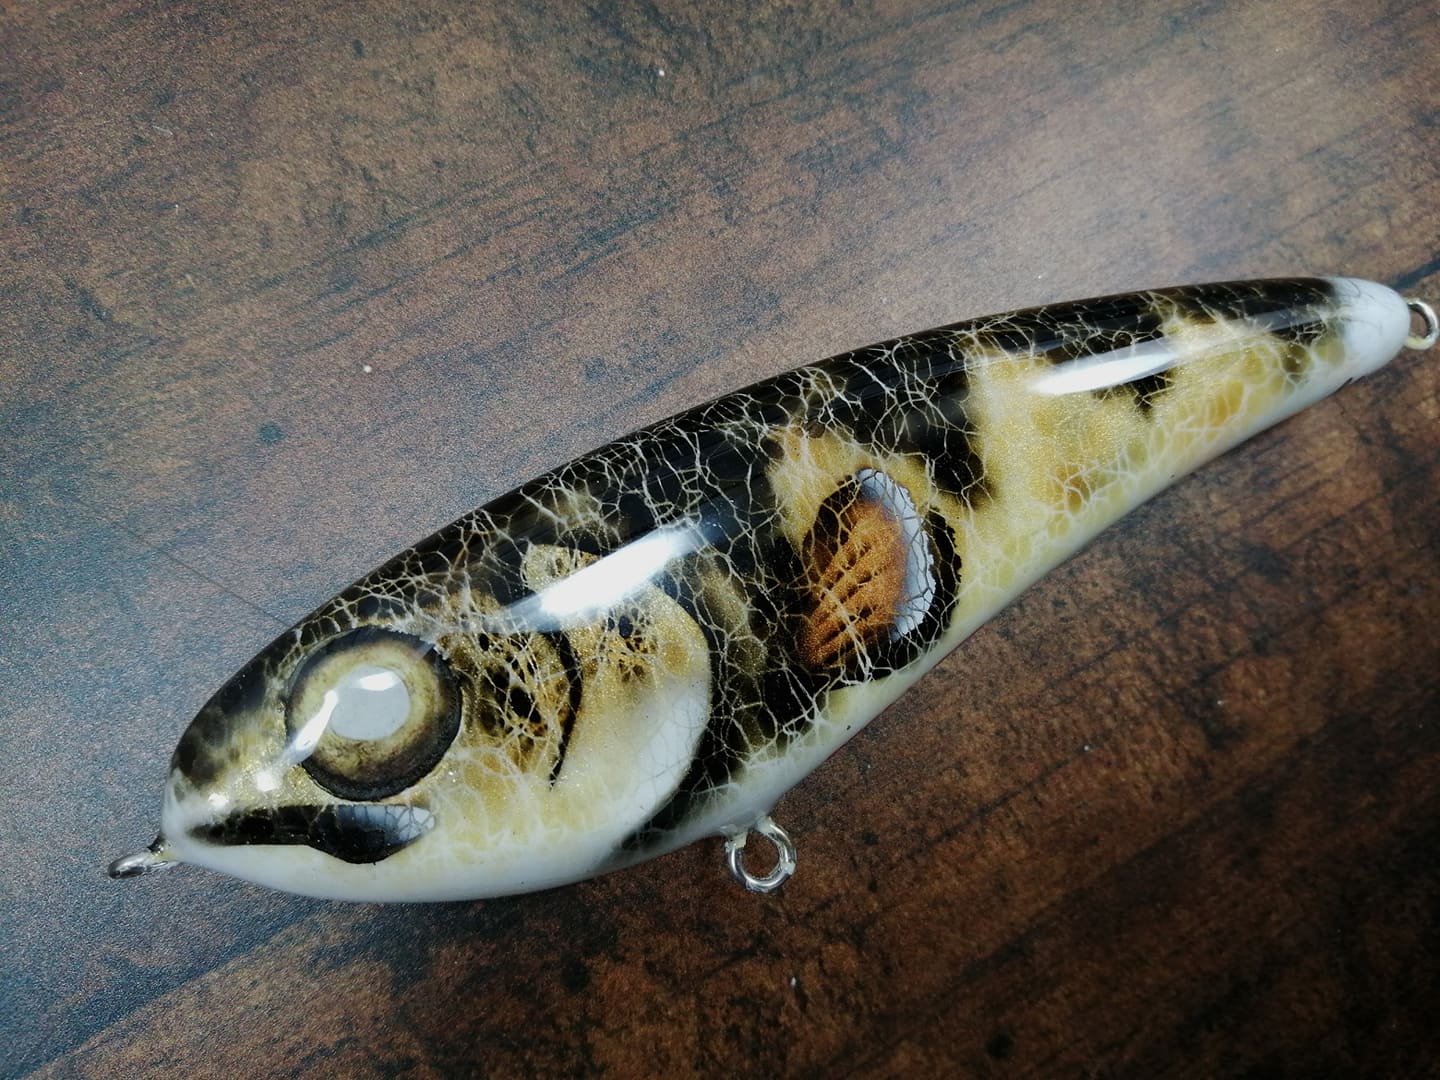 Mega Walleye Sivler- Handmade Custom baits for Freshwater Fishing